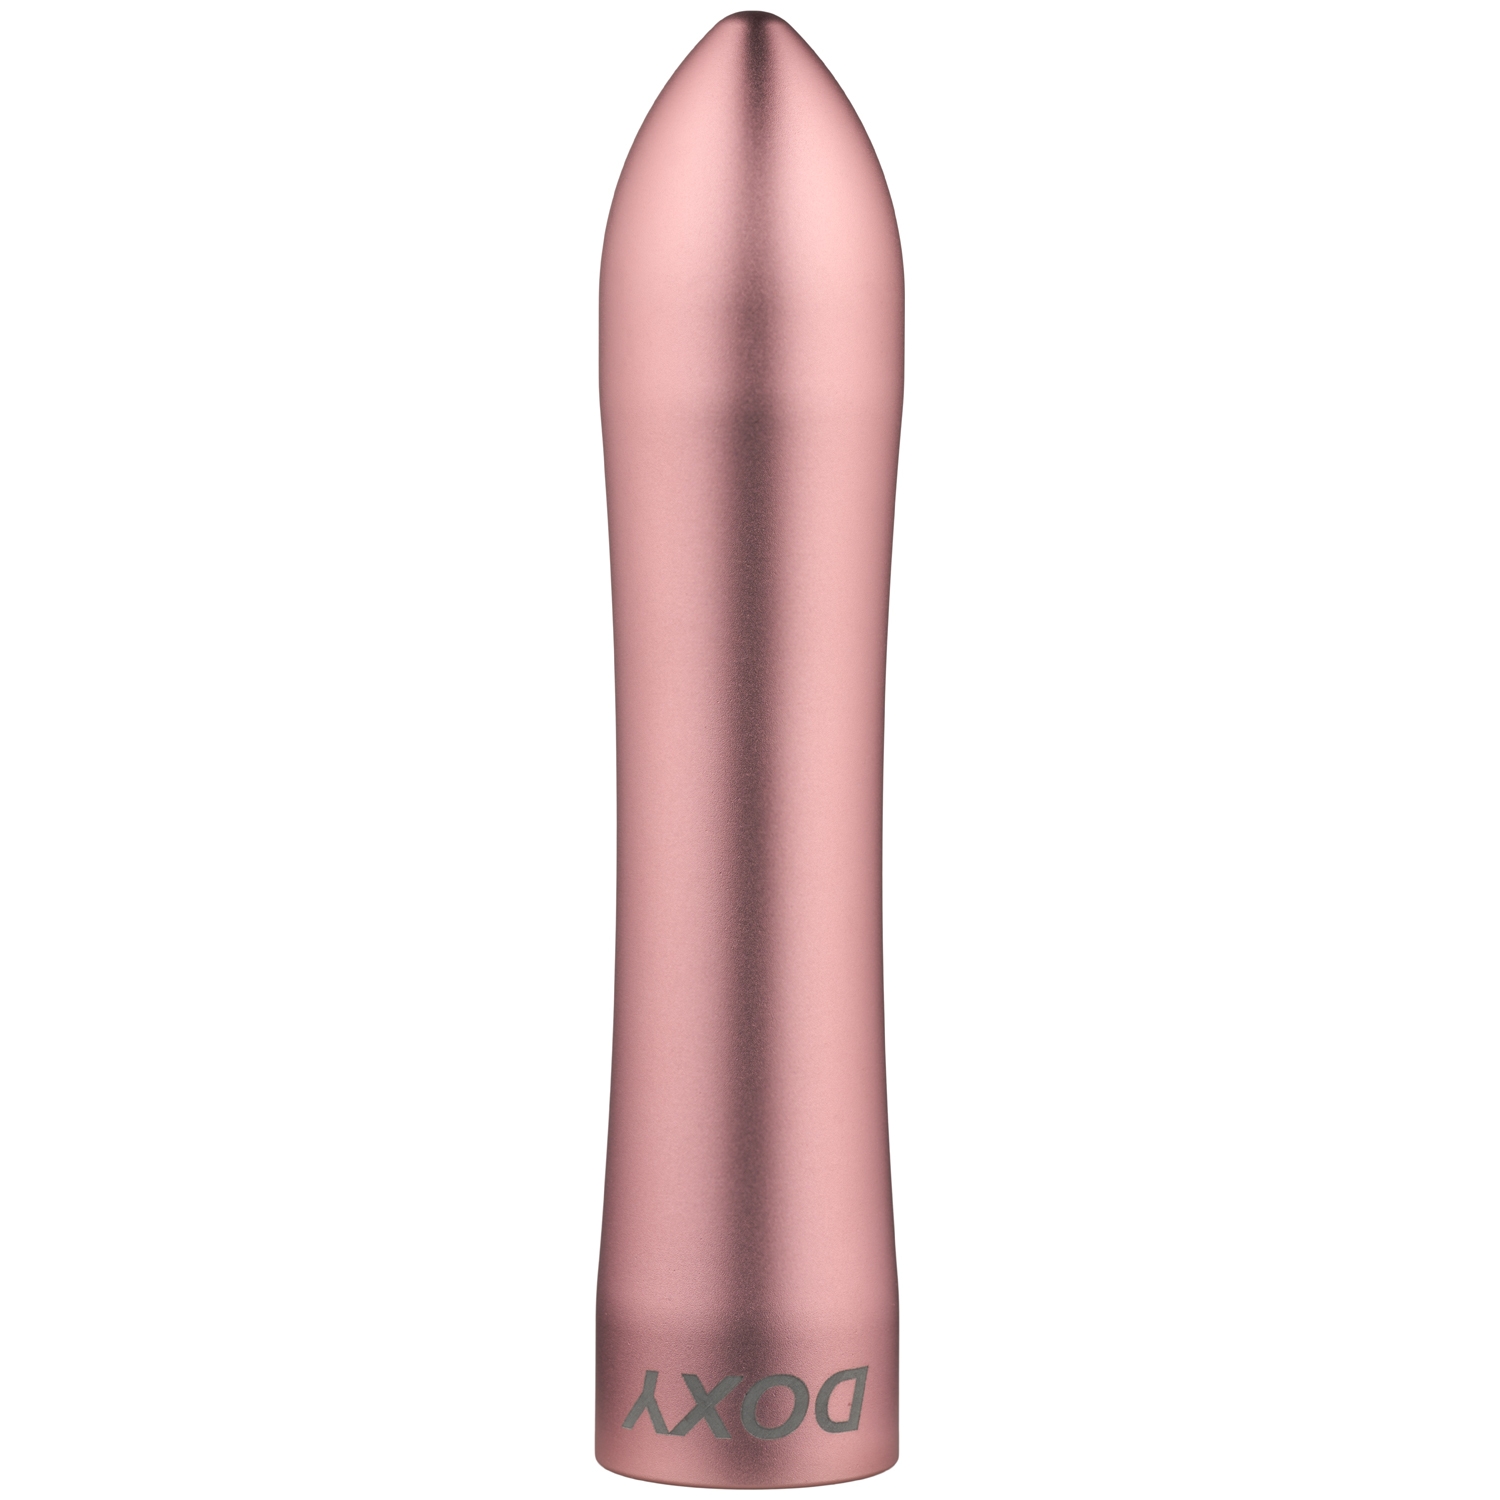 Doxy Rose Gold Kulvibrator - Guld | Vibratorer//Favoriter//Kvinnor//Vattentät Vibrator//Laddningsbar Vibrator//Mini Vibrator//Doxy//Klitorisvibrator//Bulletvibratorer//Guld Vibratorer | Intimast